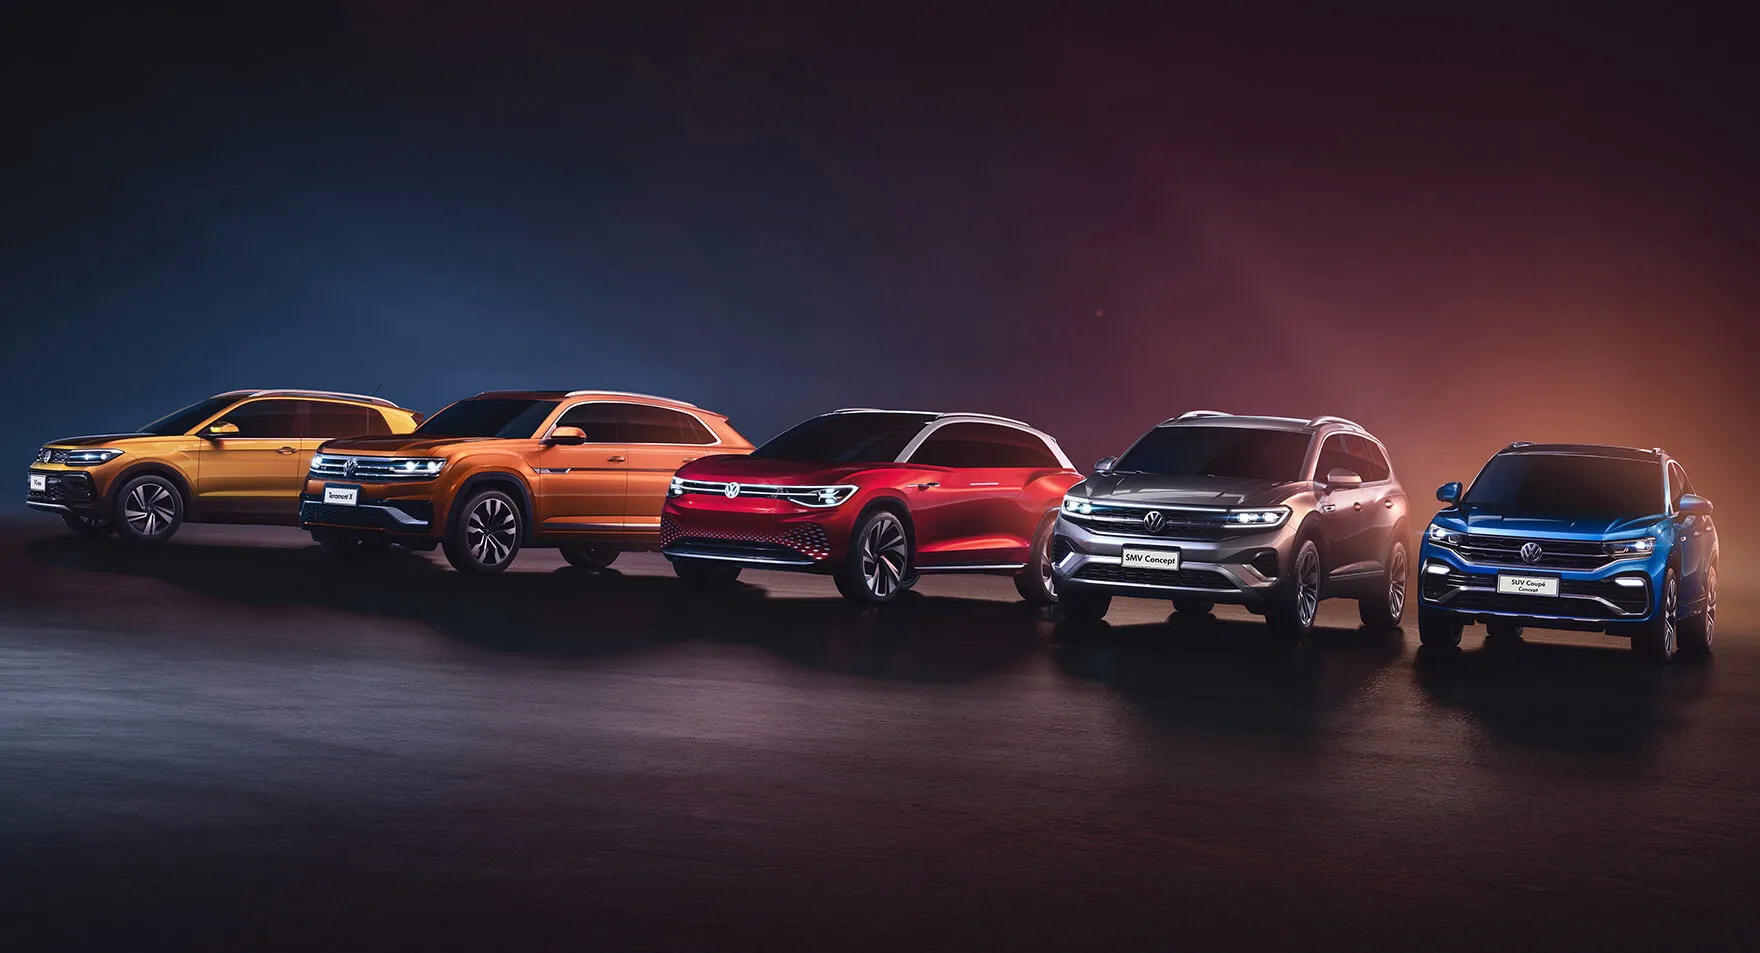 Πόσα ακόμη SUV θα φτιάξει η Volkswagen;